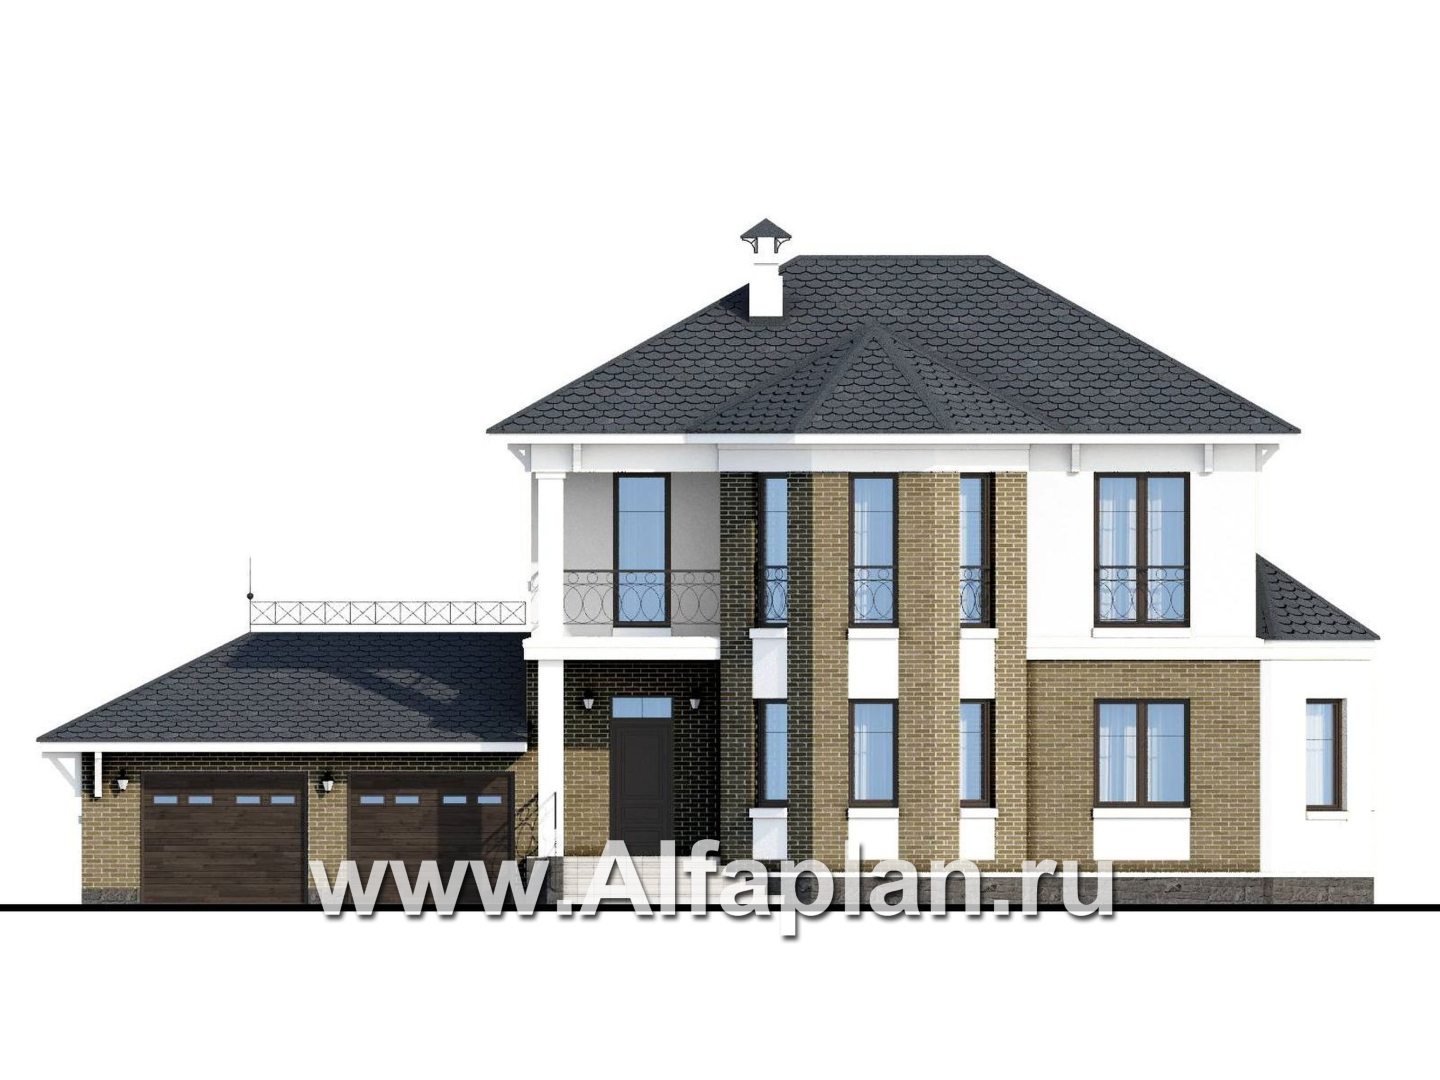 «Классика» - проект двухэтажного дома с эркером, планировка с кабинетом на 1 эт и с террасой, с гаражом на 2 авто - фасад дома